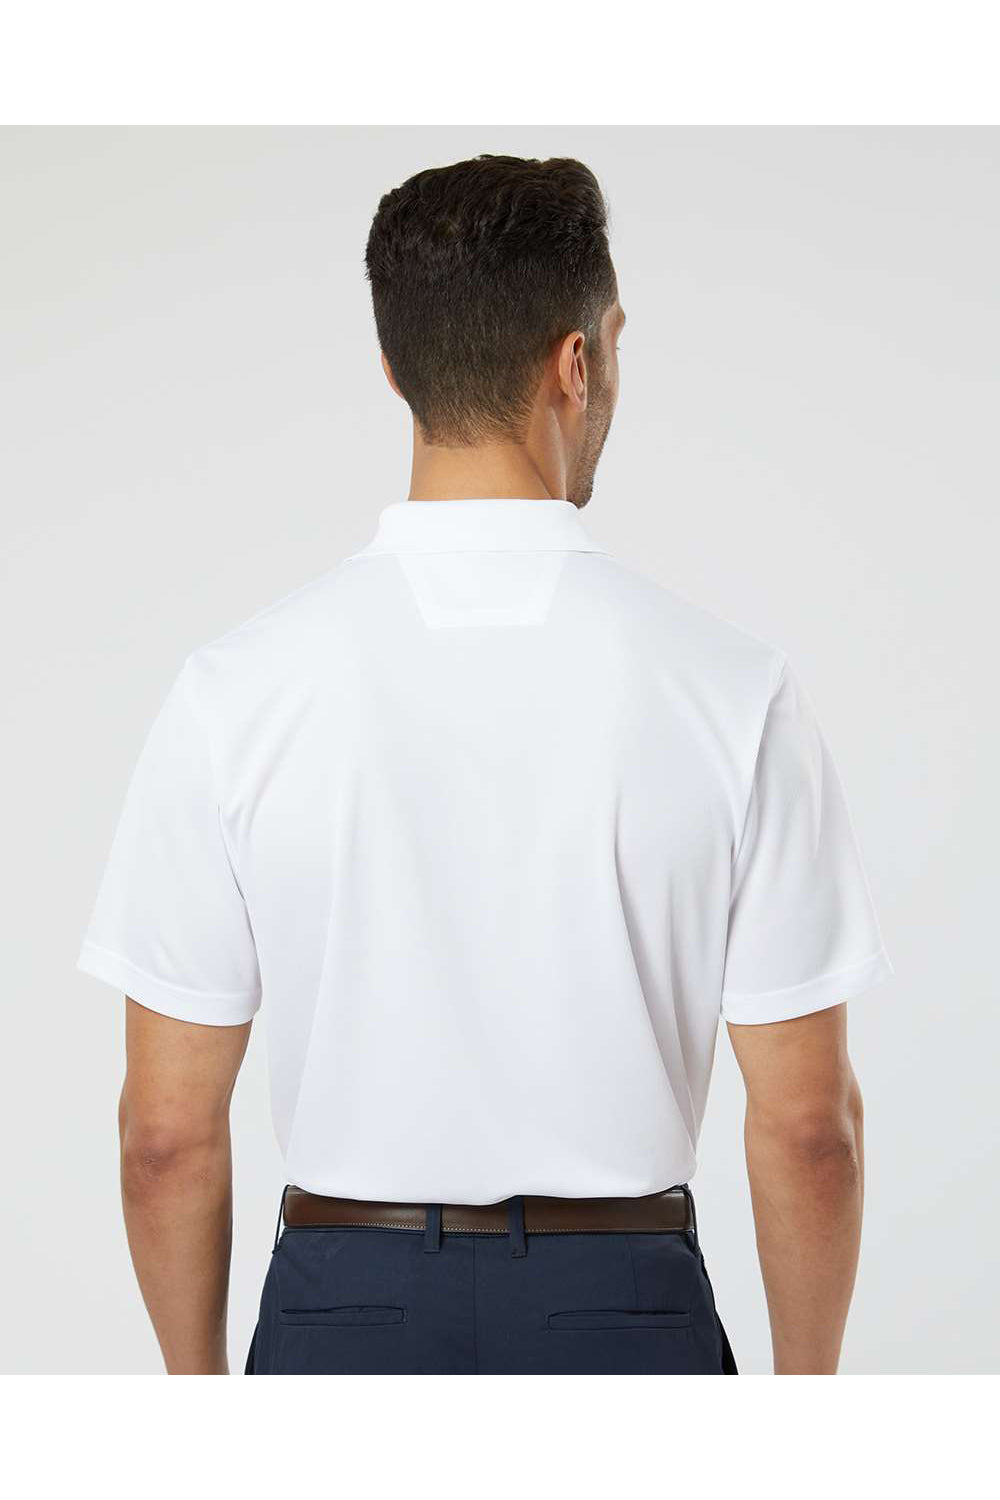 Paragon 100 Mens Saratoga Performance Mini Mesh Short Sleeve Polo Shirt White Model Back